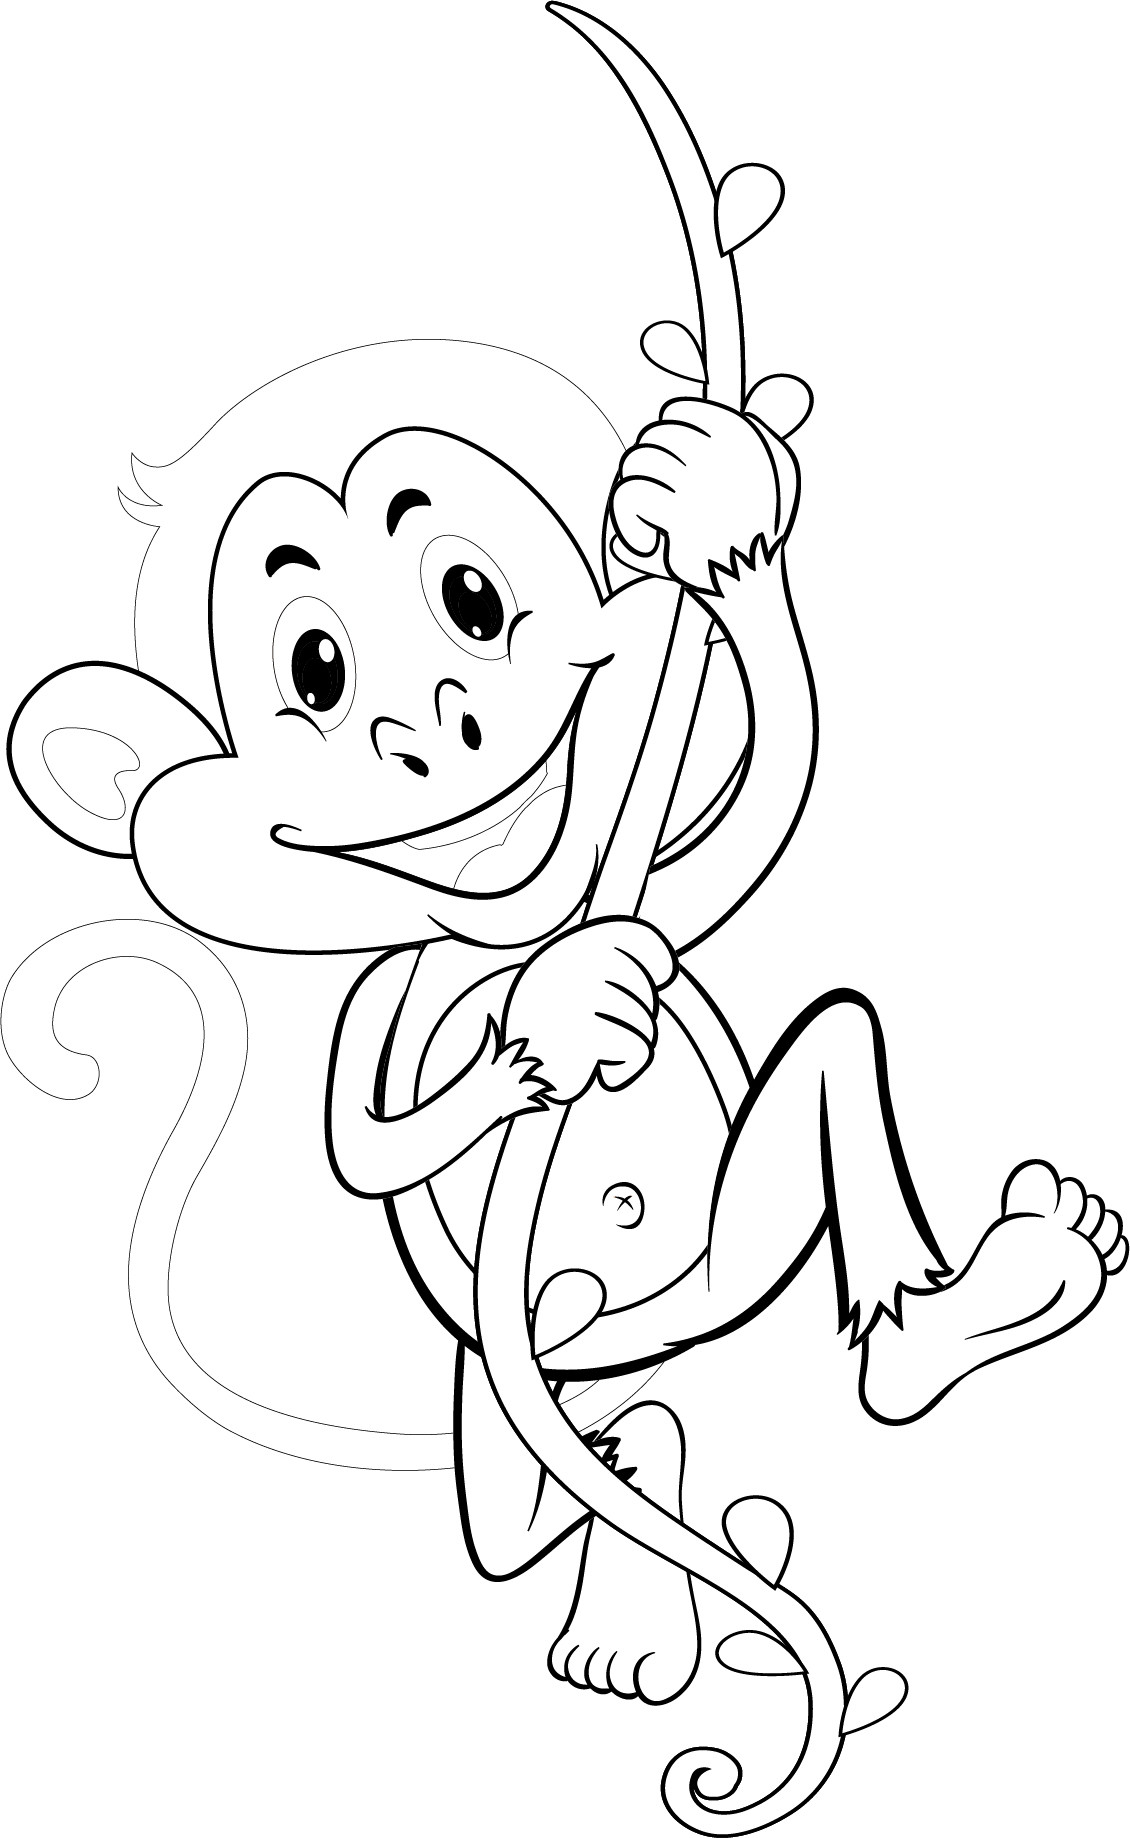 Раскраска для детей: обезьяна катается на длинной лиане